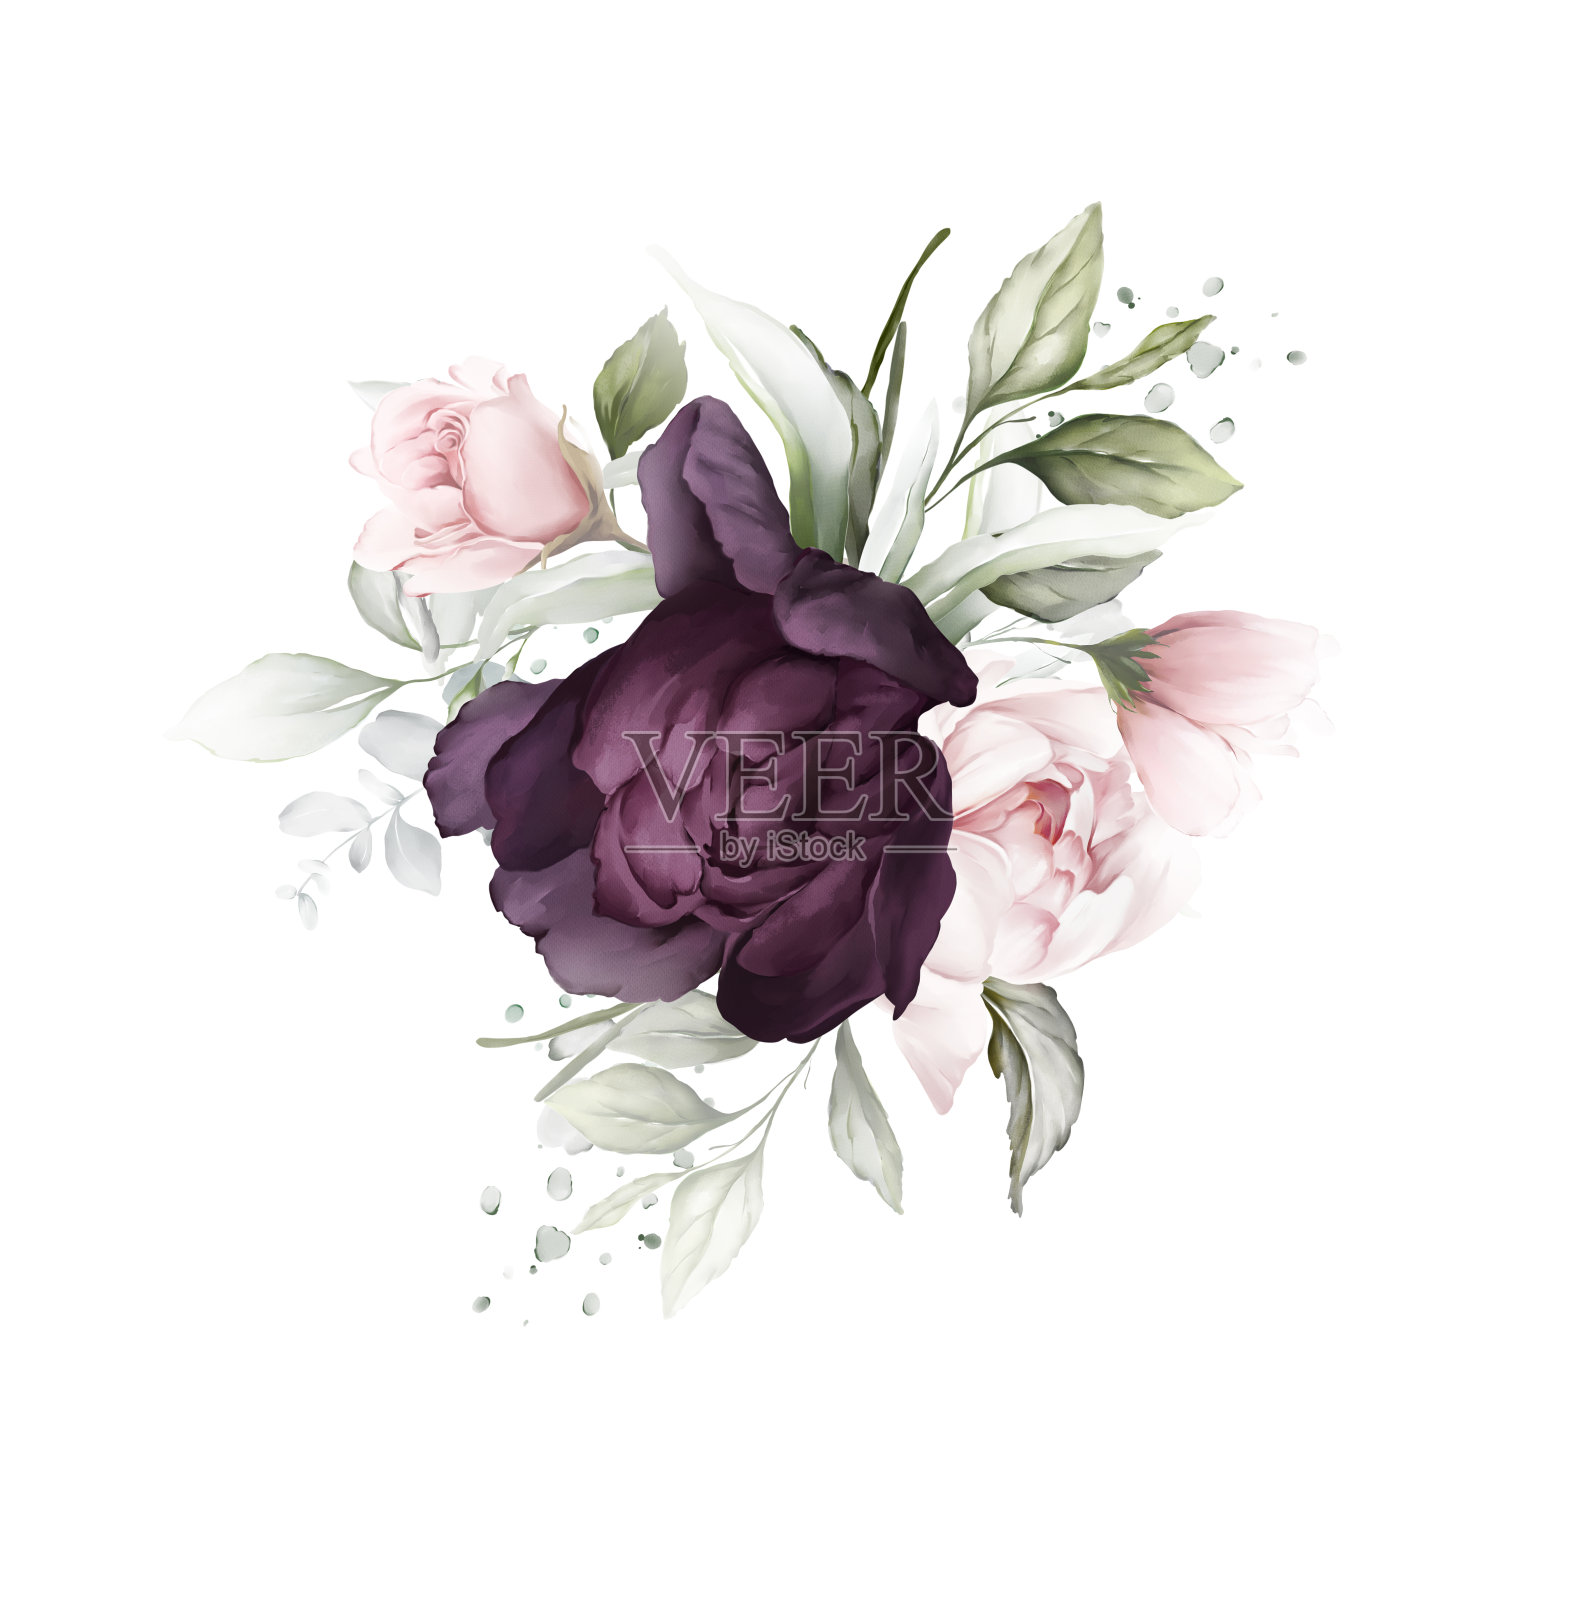 花型构图有紫色的玫瑰和娇嫩的牡丹。水彩风格的贺卡插画图片素材